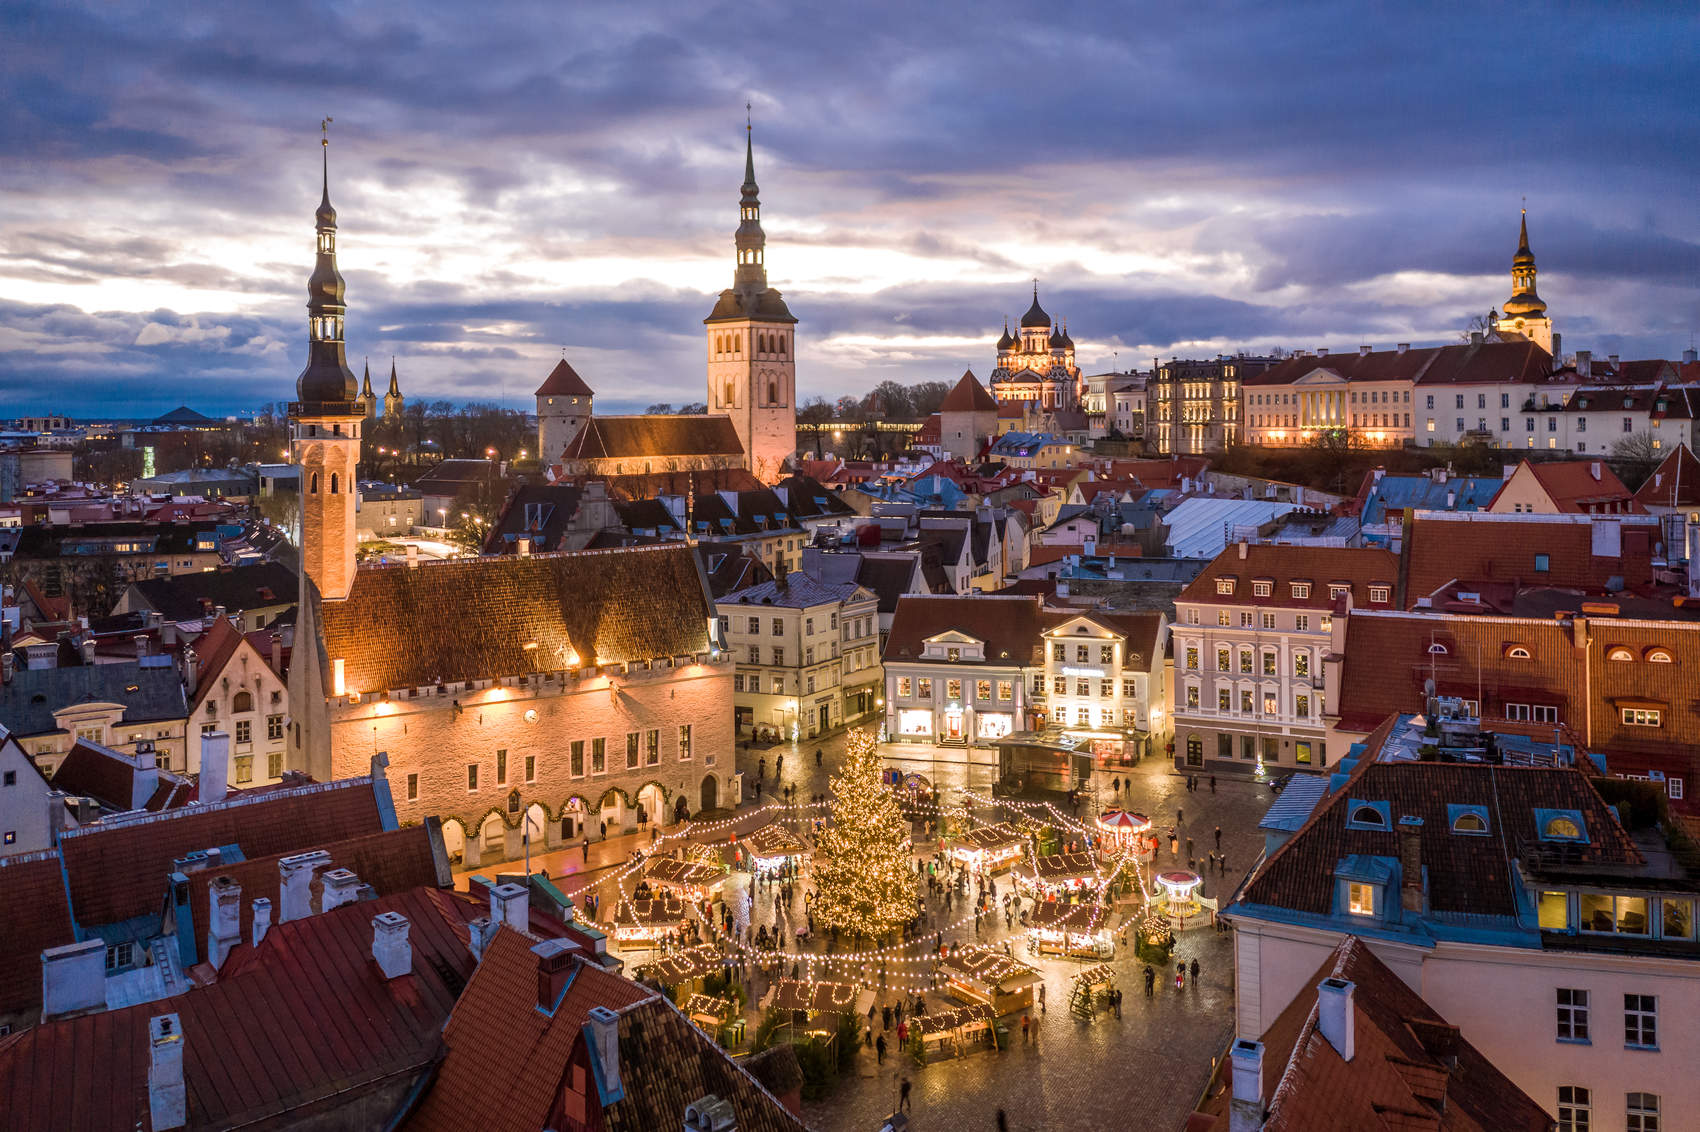 Christmas lights in Tallinn Old Town, Estonia Photo: Kaupo Kalda